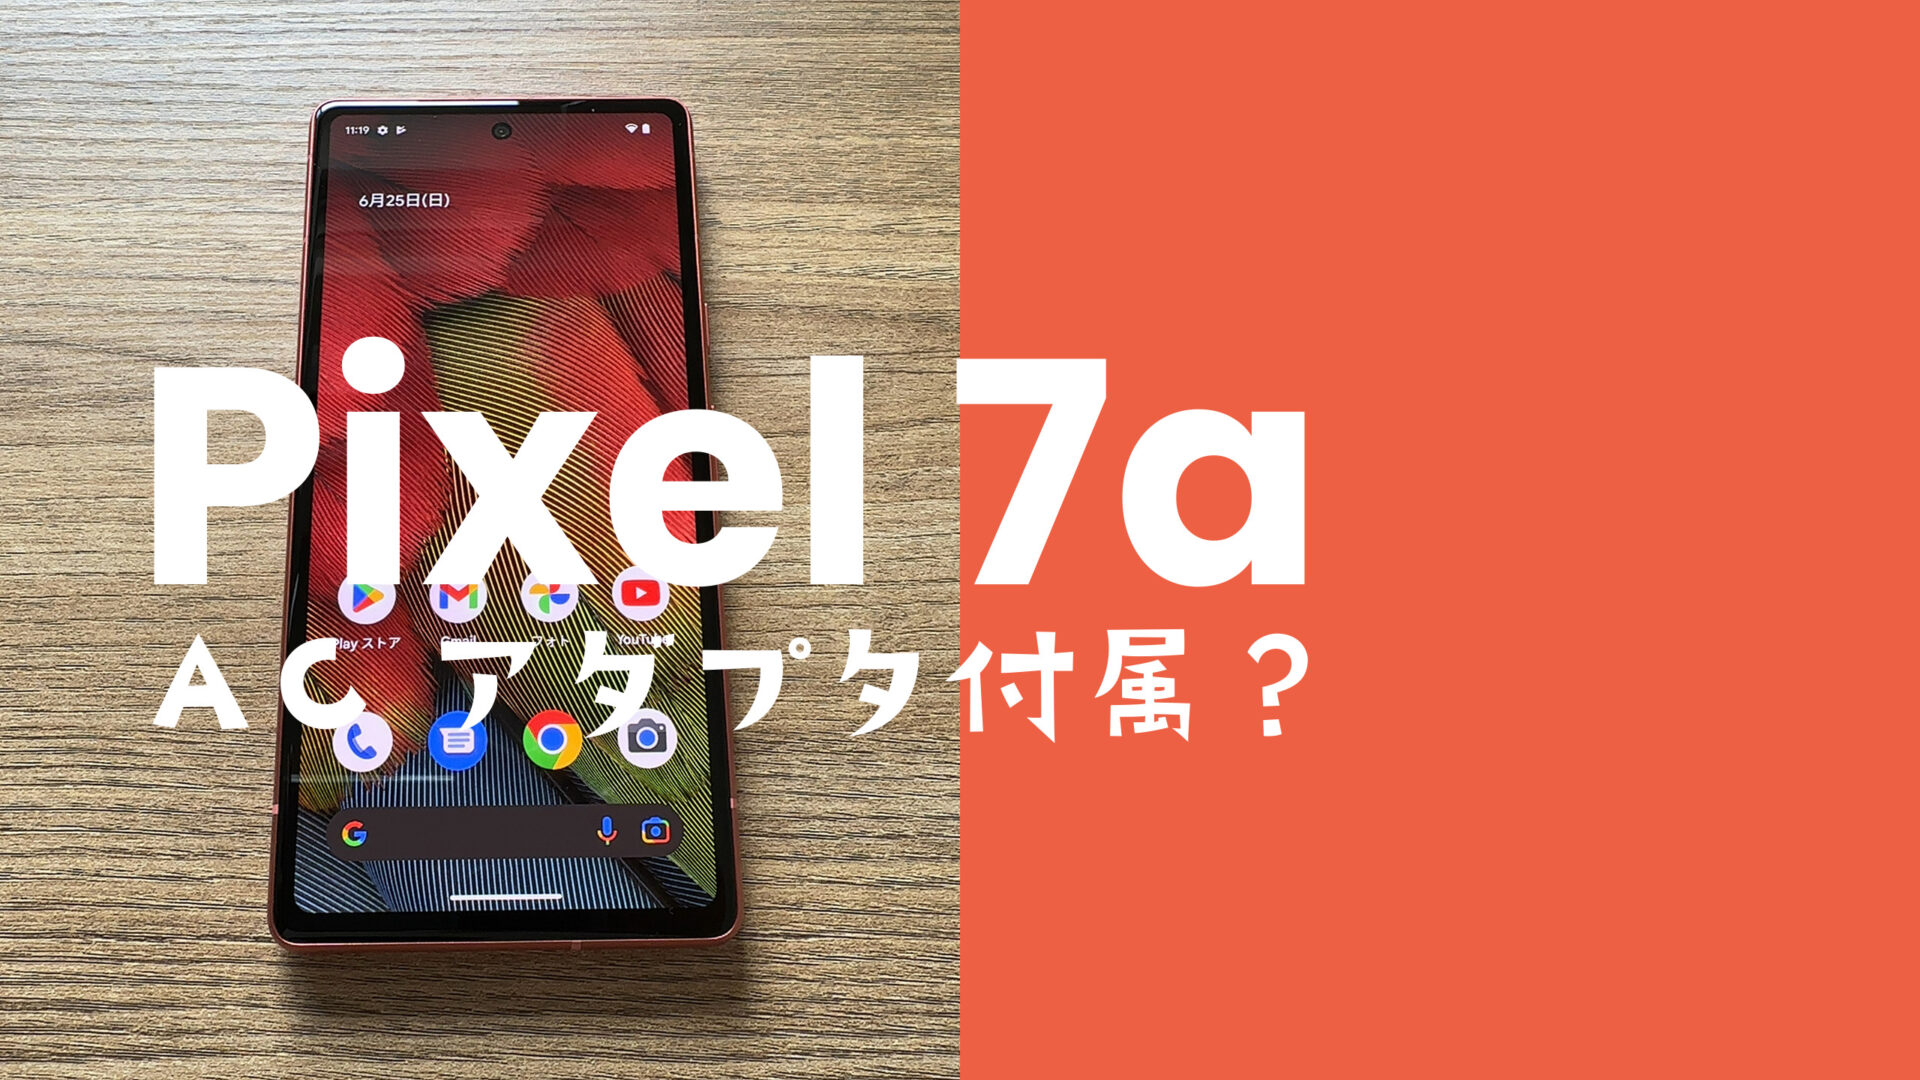 Google Pixel 7a【ピクセル7a】は充電器ついてない&別売りになる？のサムネイル画像